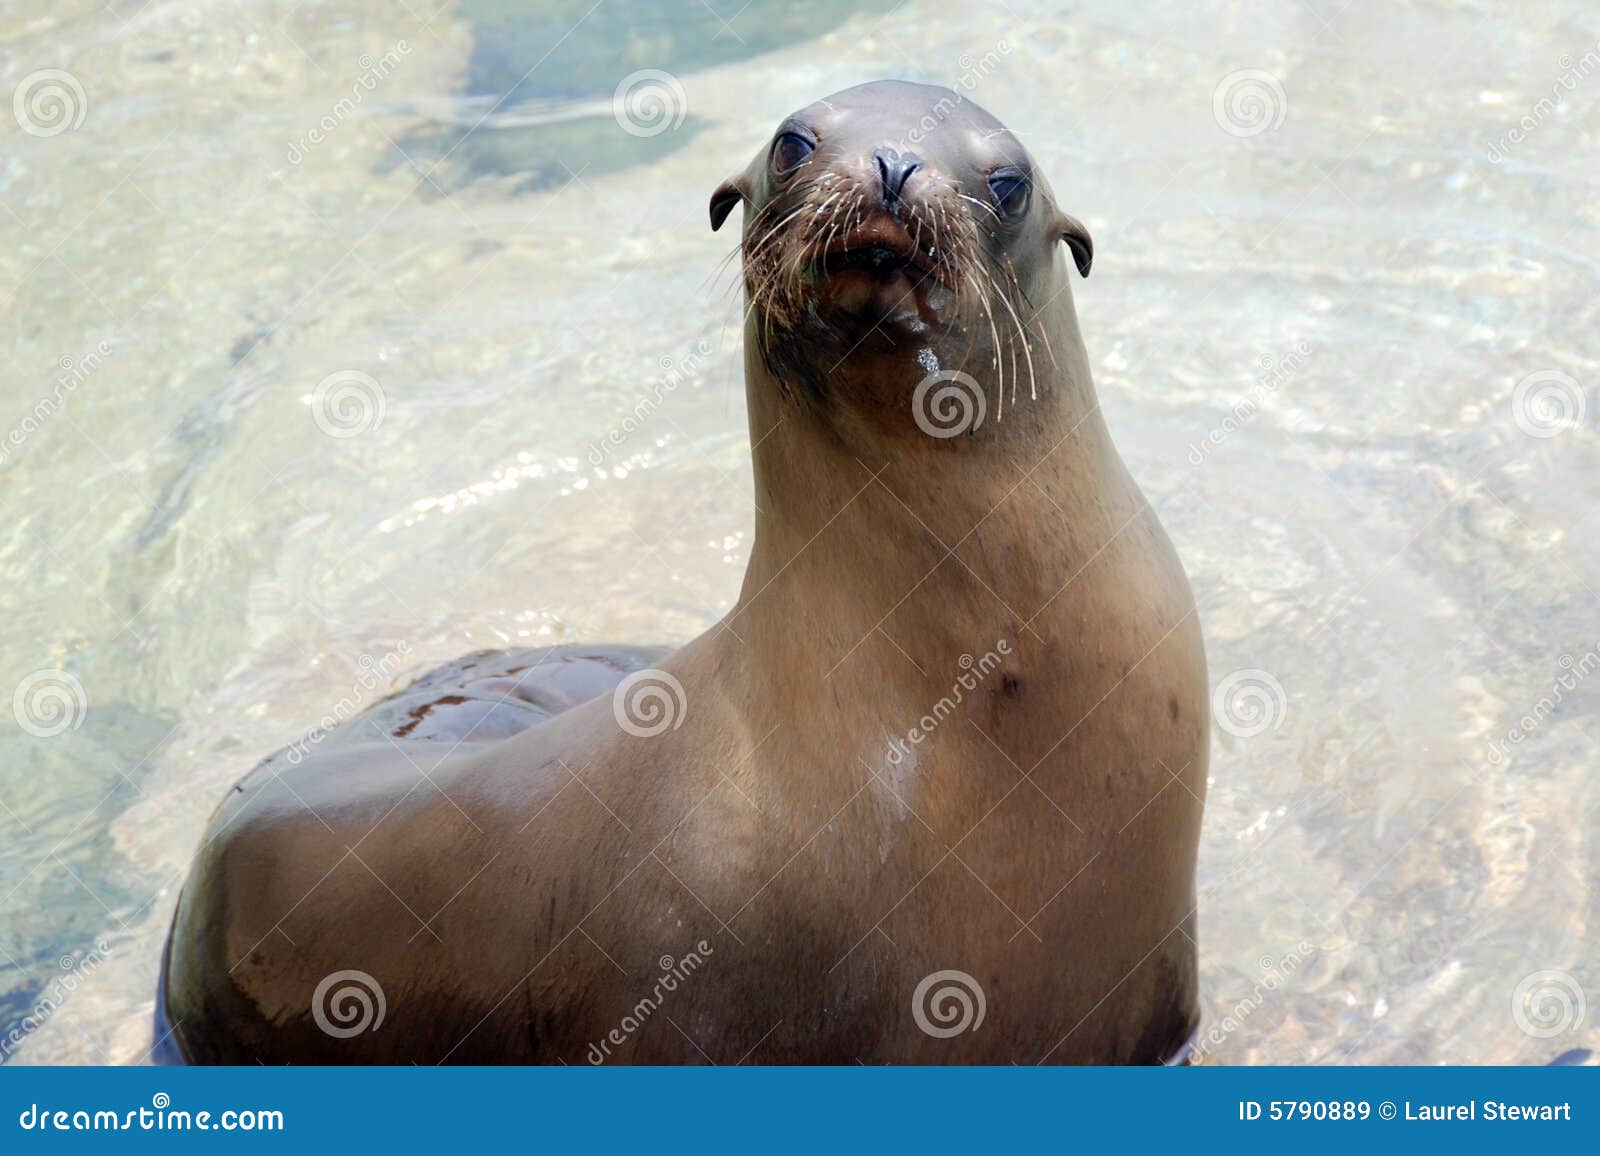 california sea lion